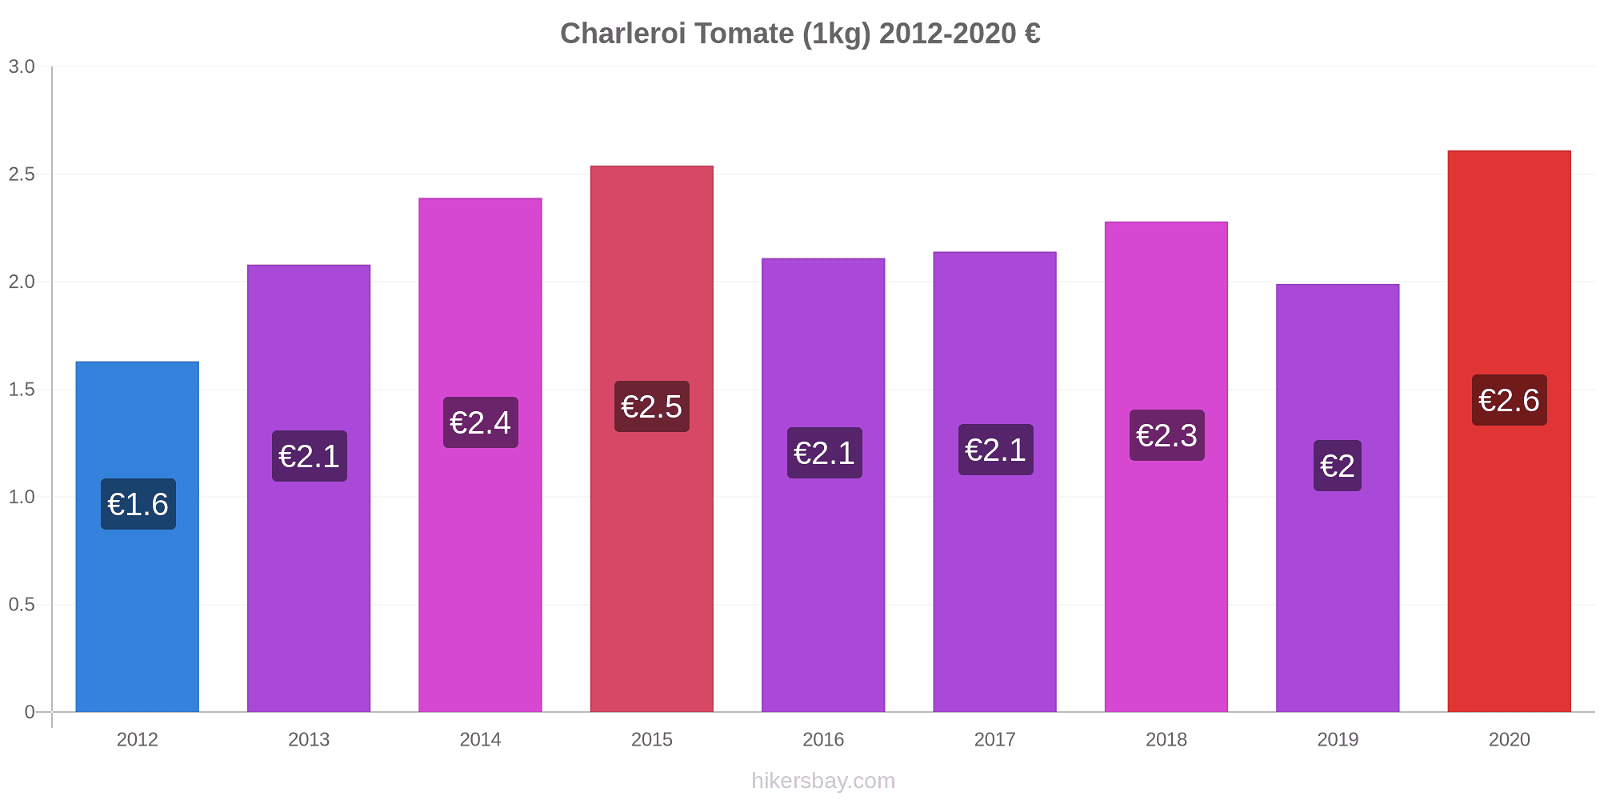 Charleroi variação de preço Tomate (1kg) hikersbay.com